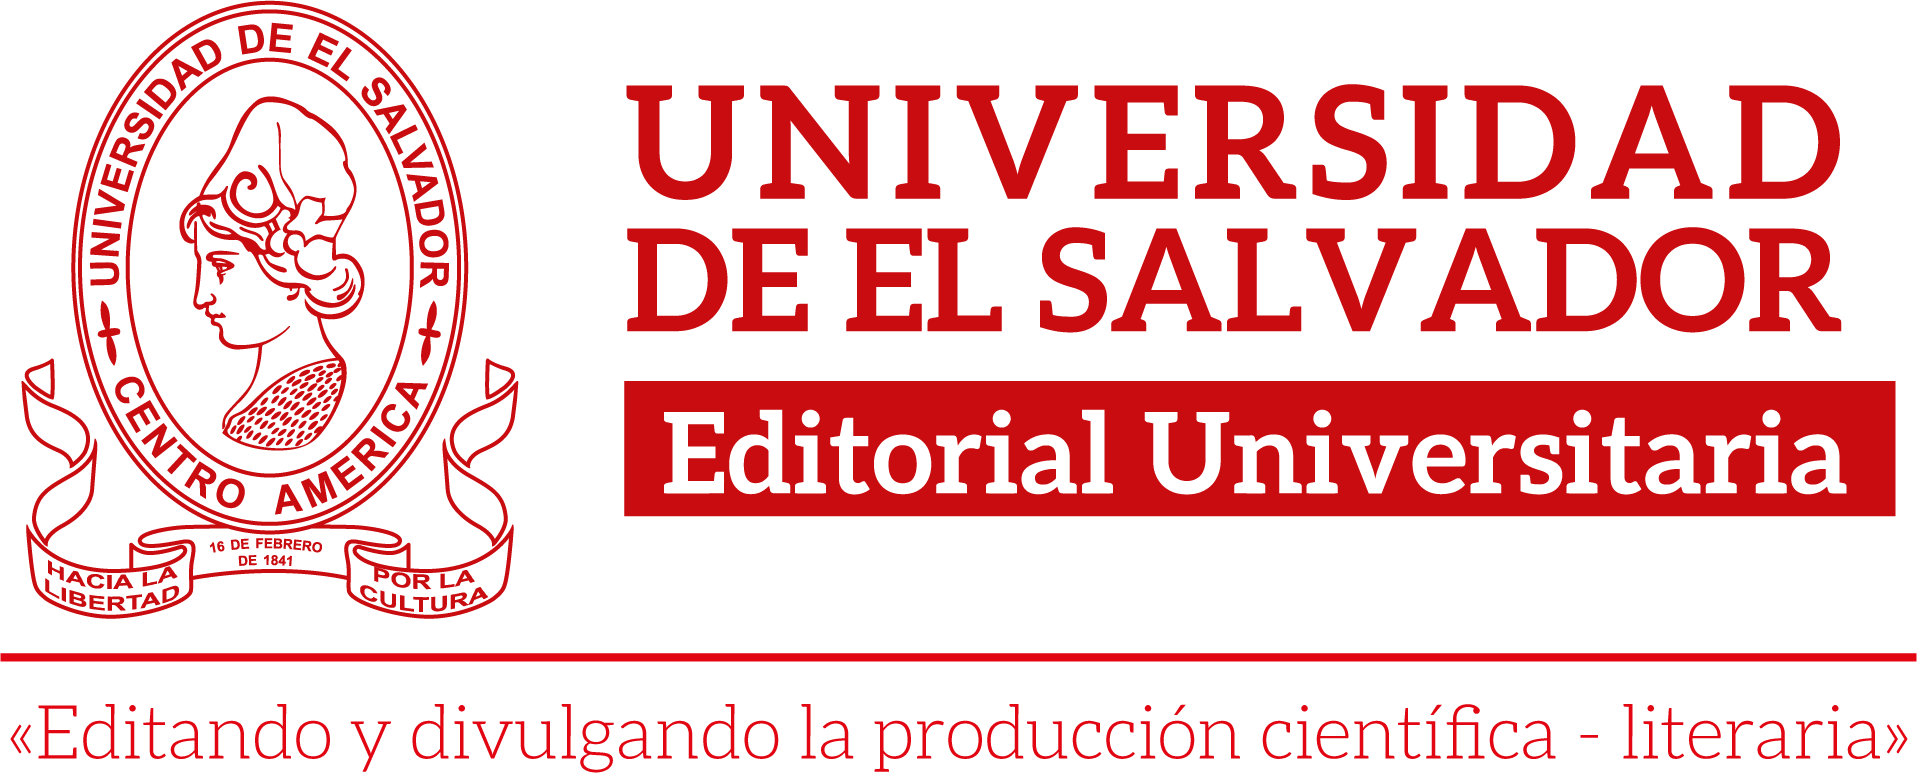 Editorial Universitaria